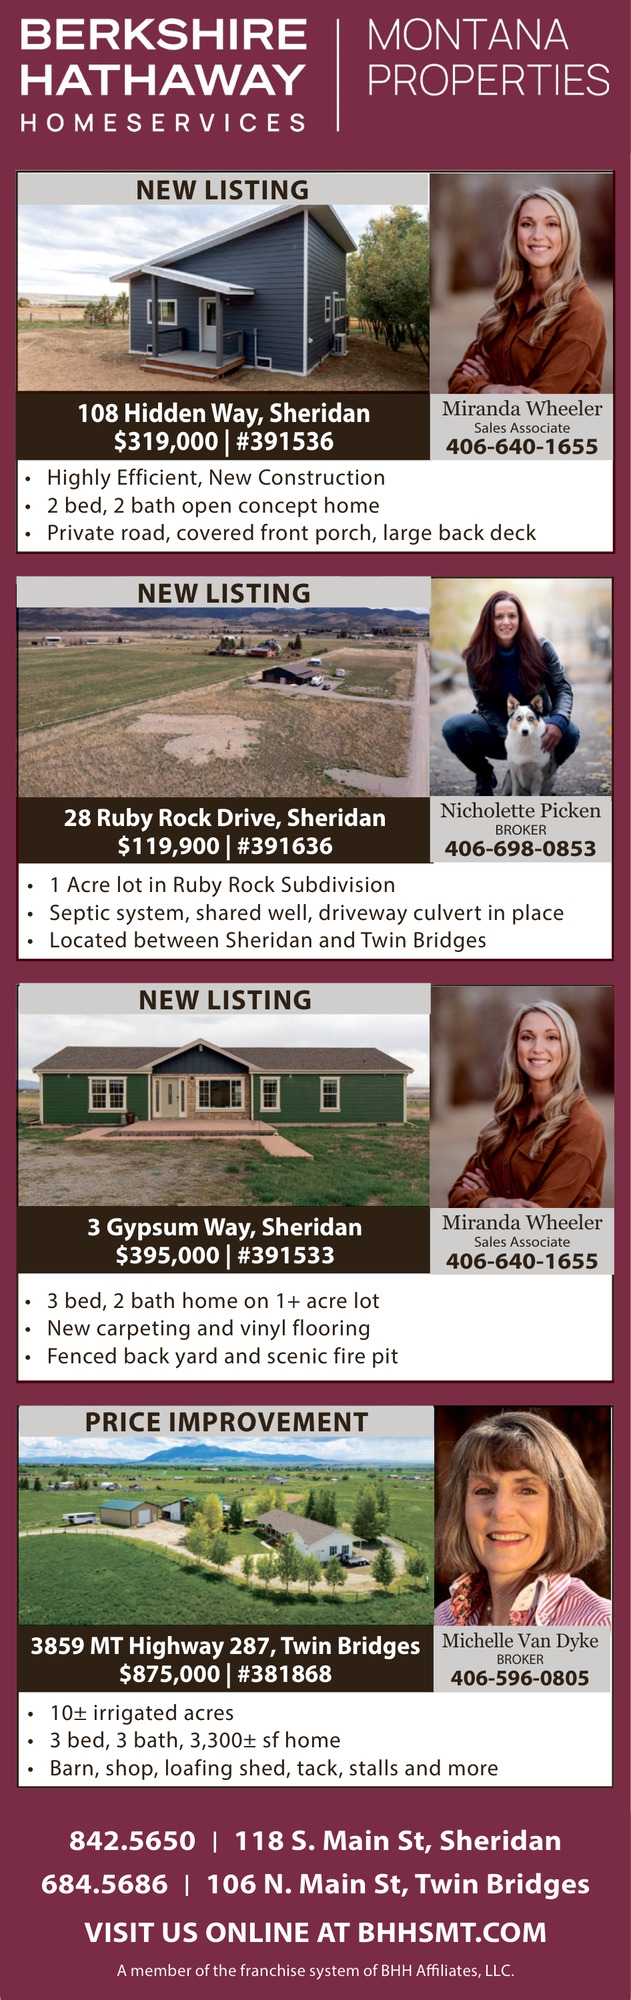 Montana Properties, Michelle Van Dyke / Nicole Picken / Miranda Wheeler - Berkshire Hathaway HomeServices Montana Properties, Twin Bridges, MT